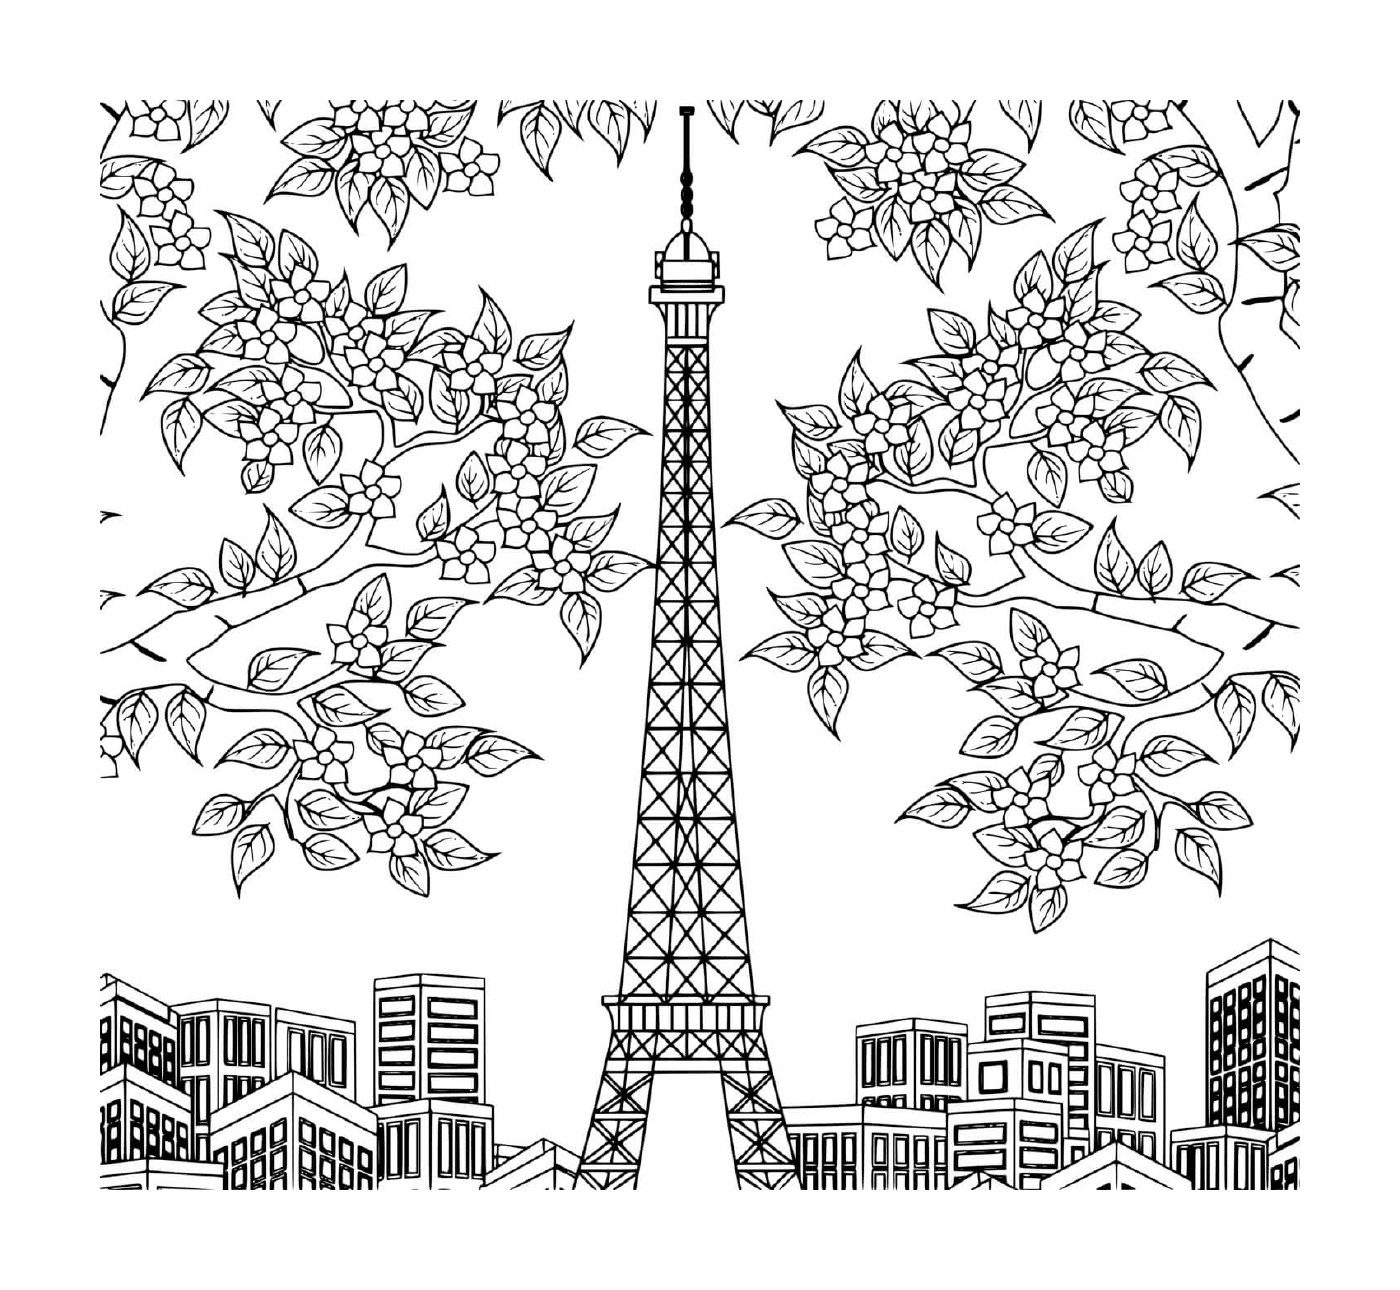  Torre Eiffel circondata da alberi, fiori e edifici 